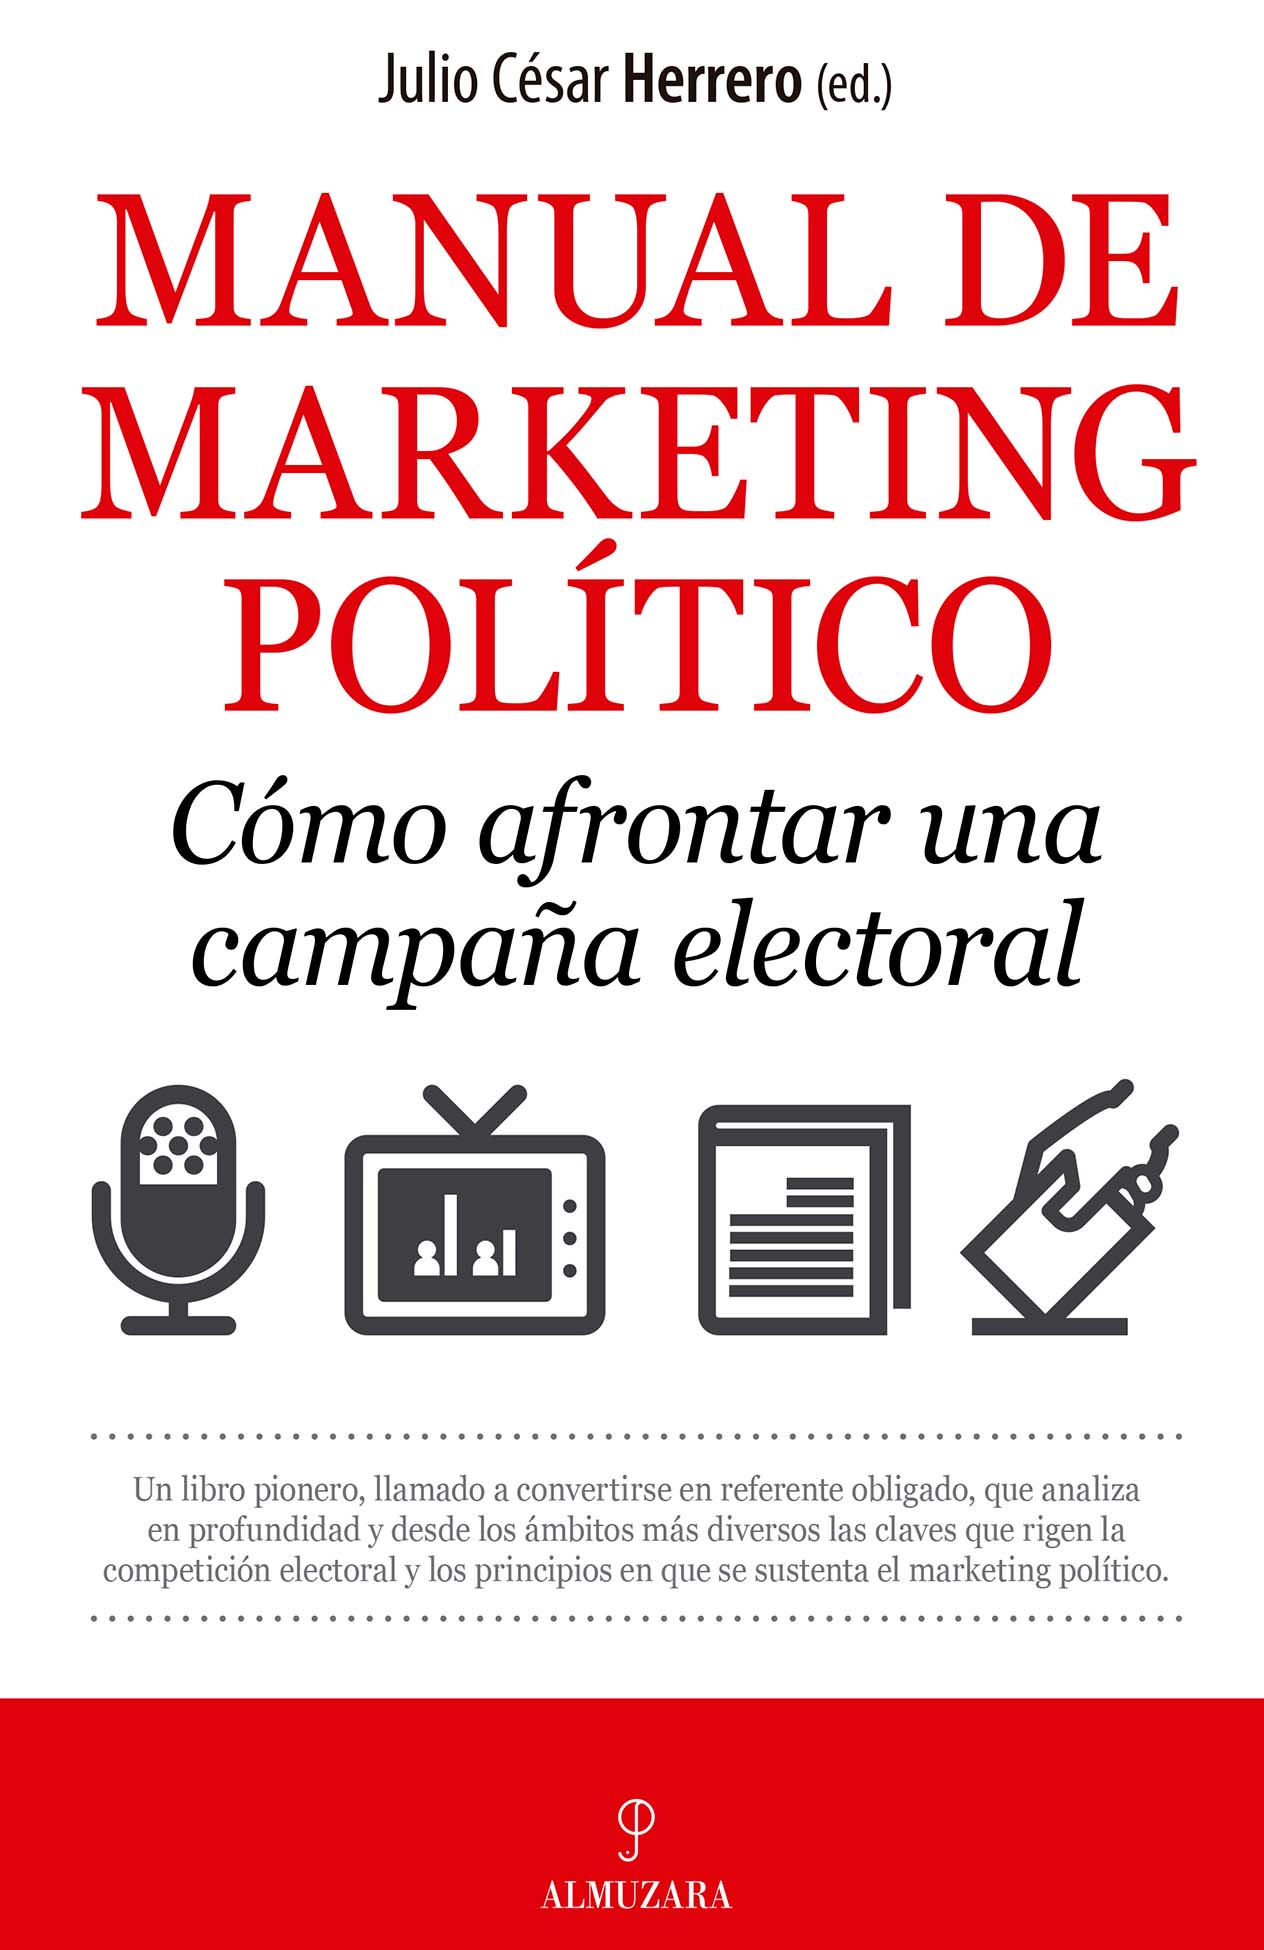 Portada del libro "Manual de Marketing Político" de Julio César Herrero